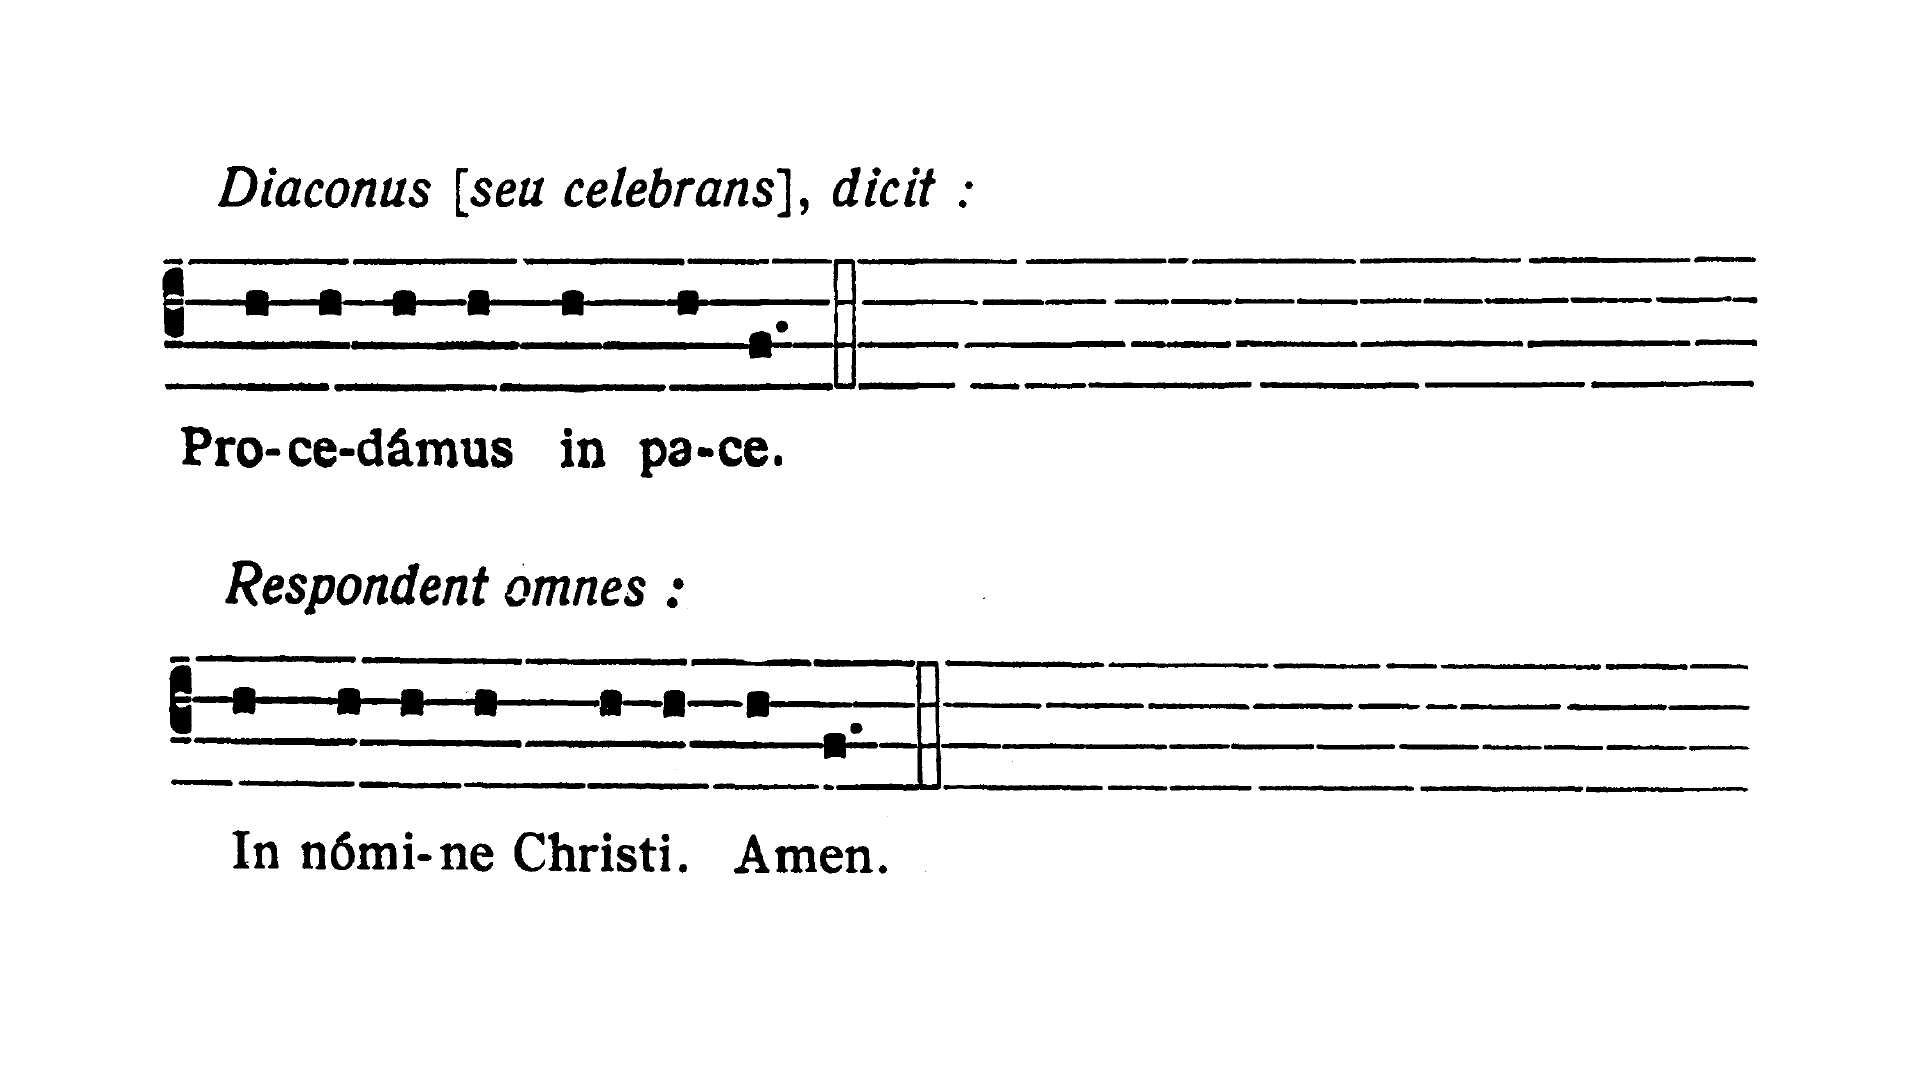 Dominica II in Passionis seu in Palmis (II Niedziela Męki Pańskiej lub Palmowa) - Procedamus